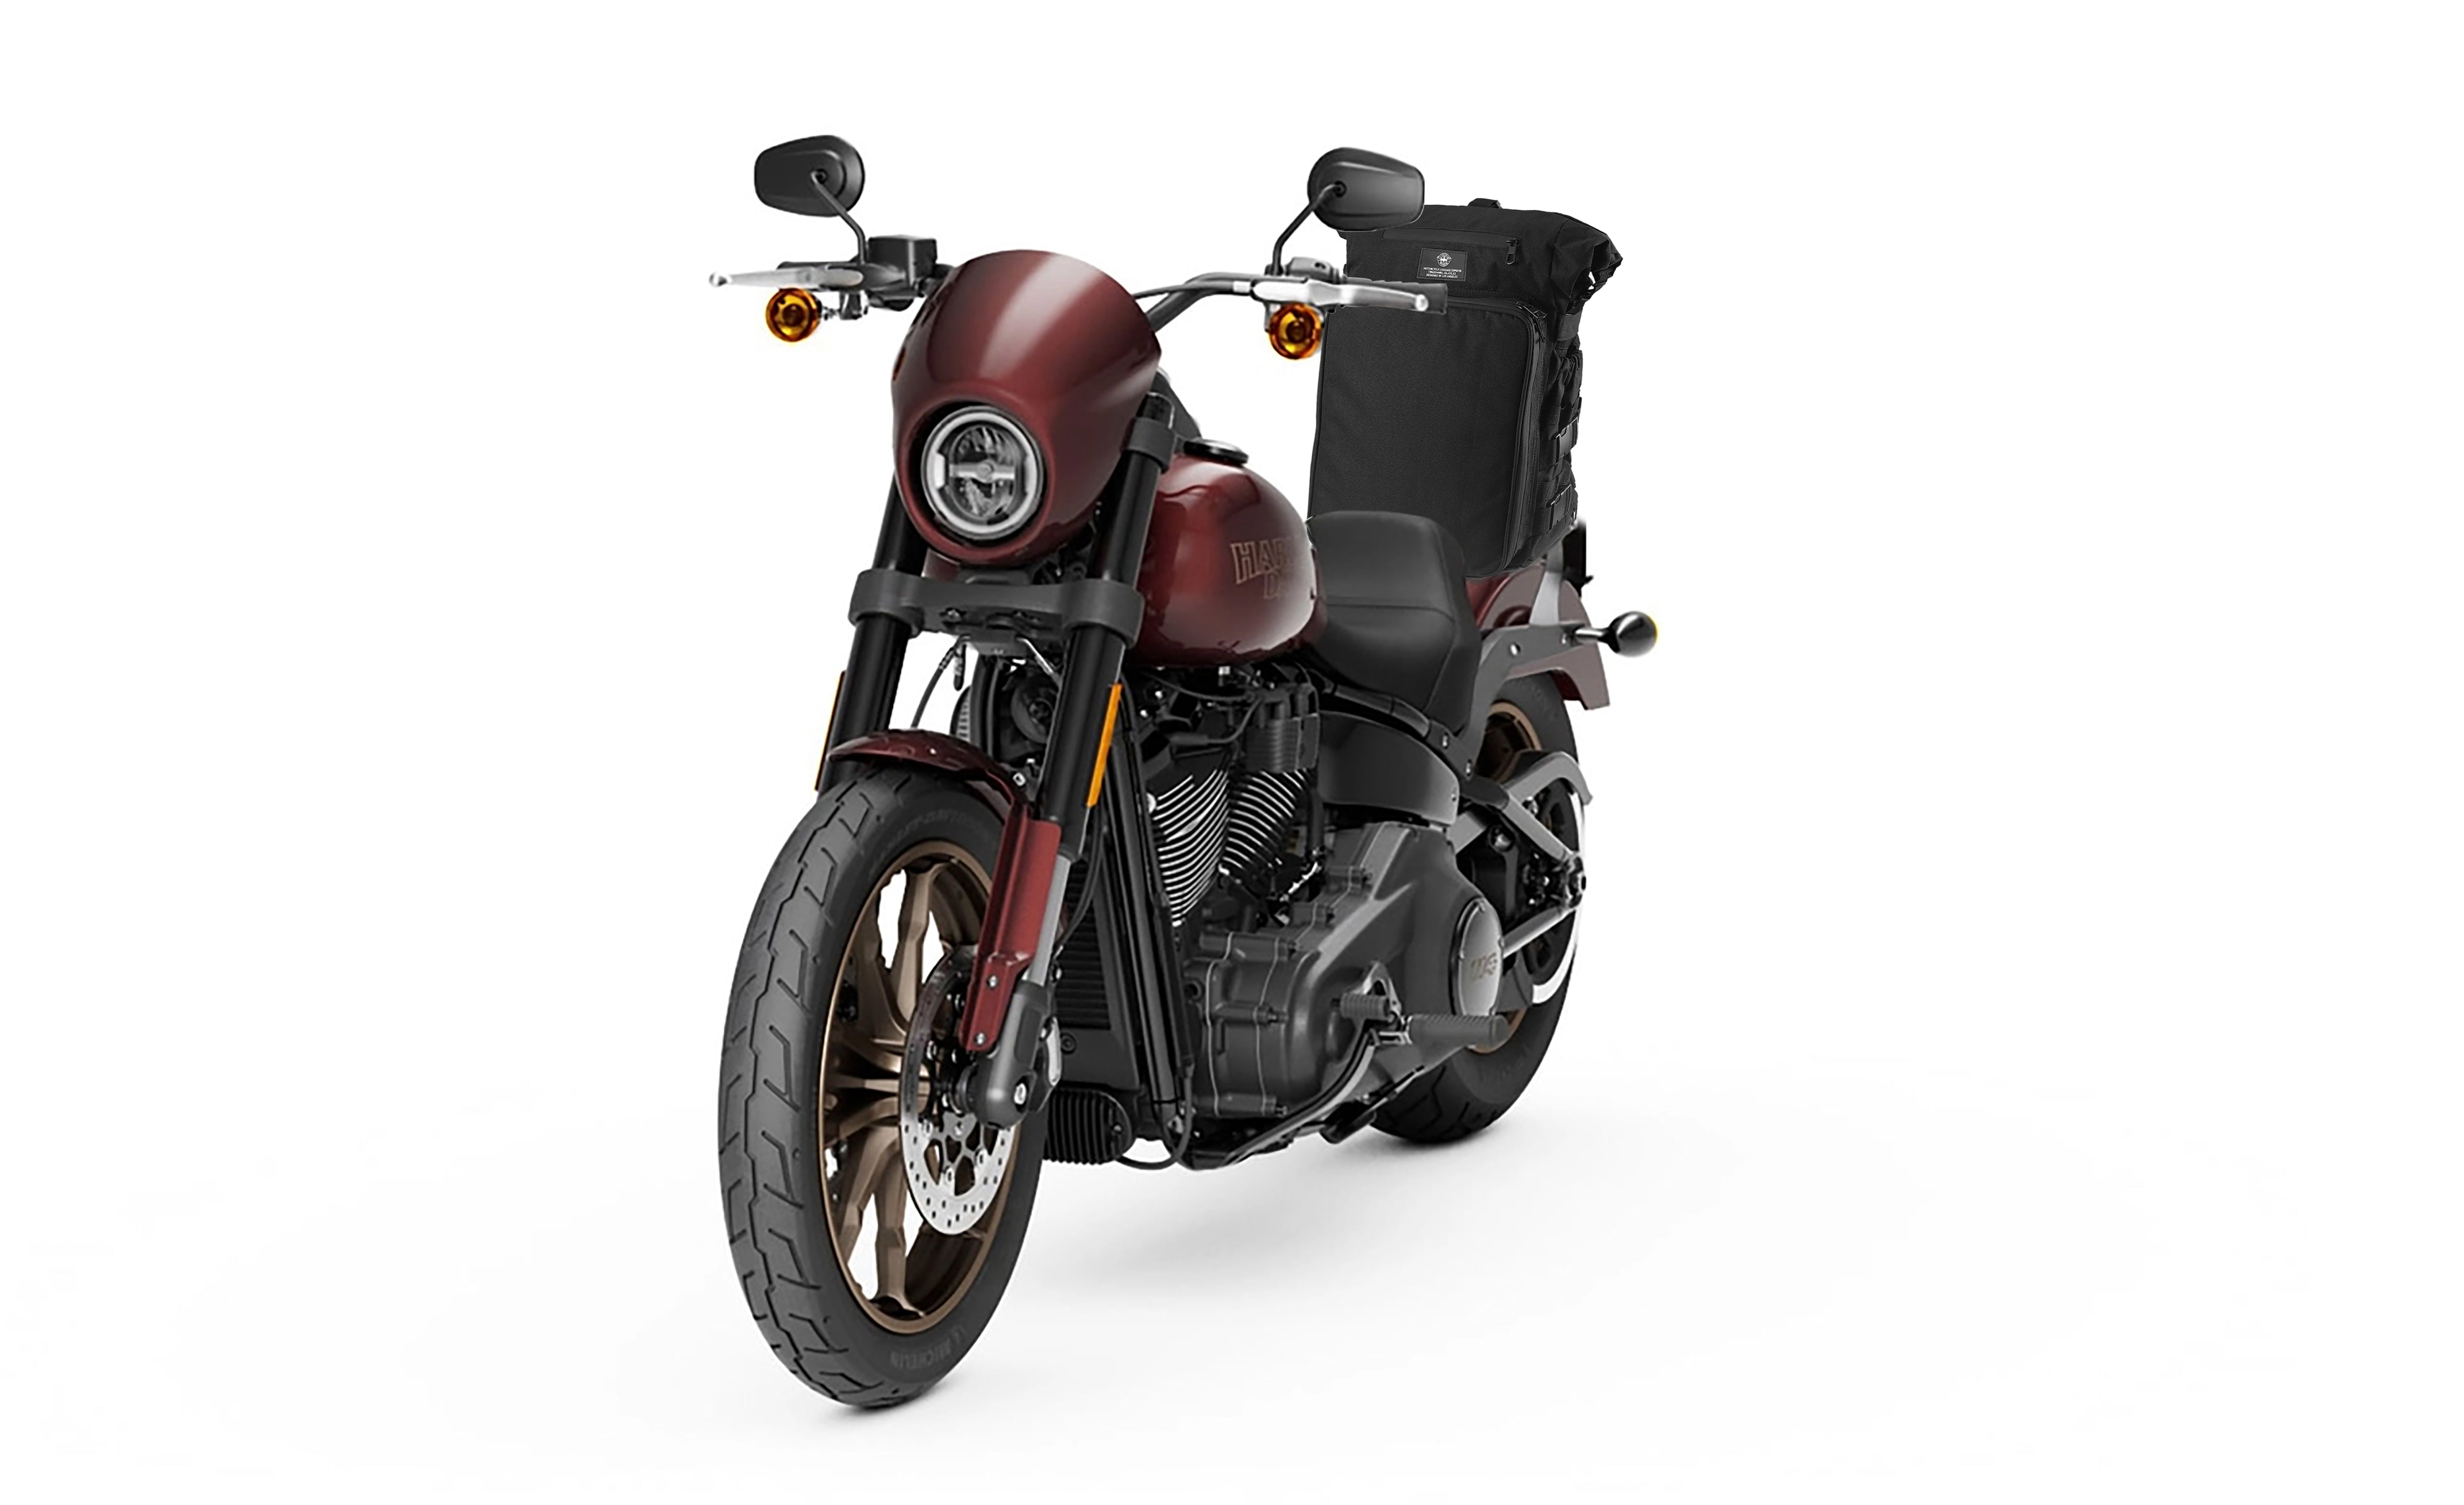 Viking Renegade XL Motorcycle Tail Bag Bag on Bike View @expand